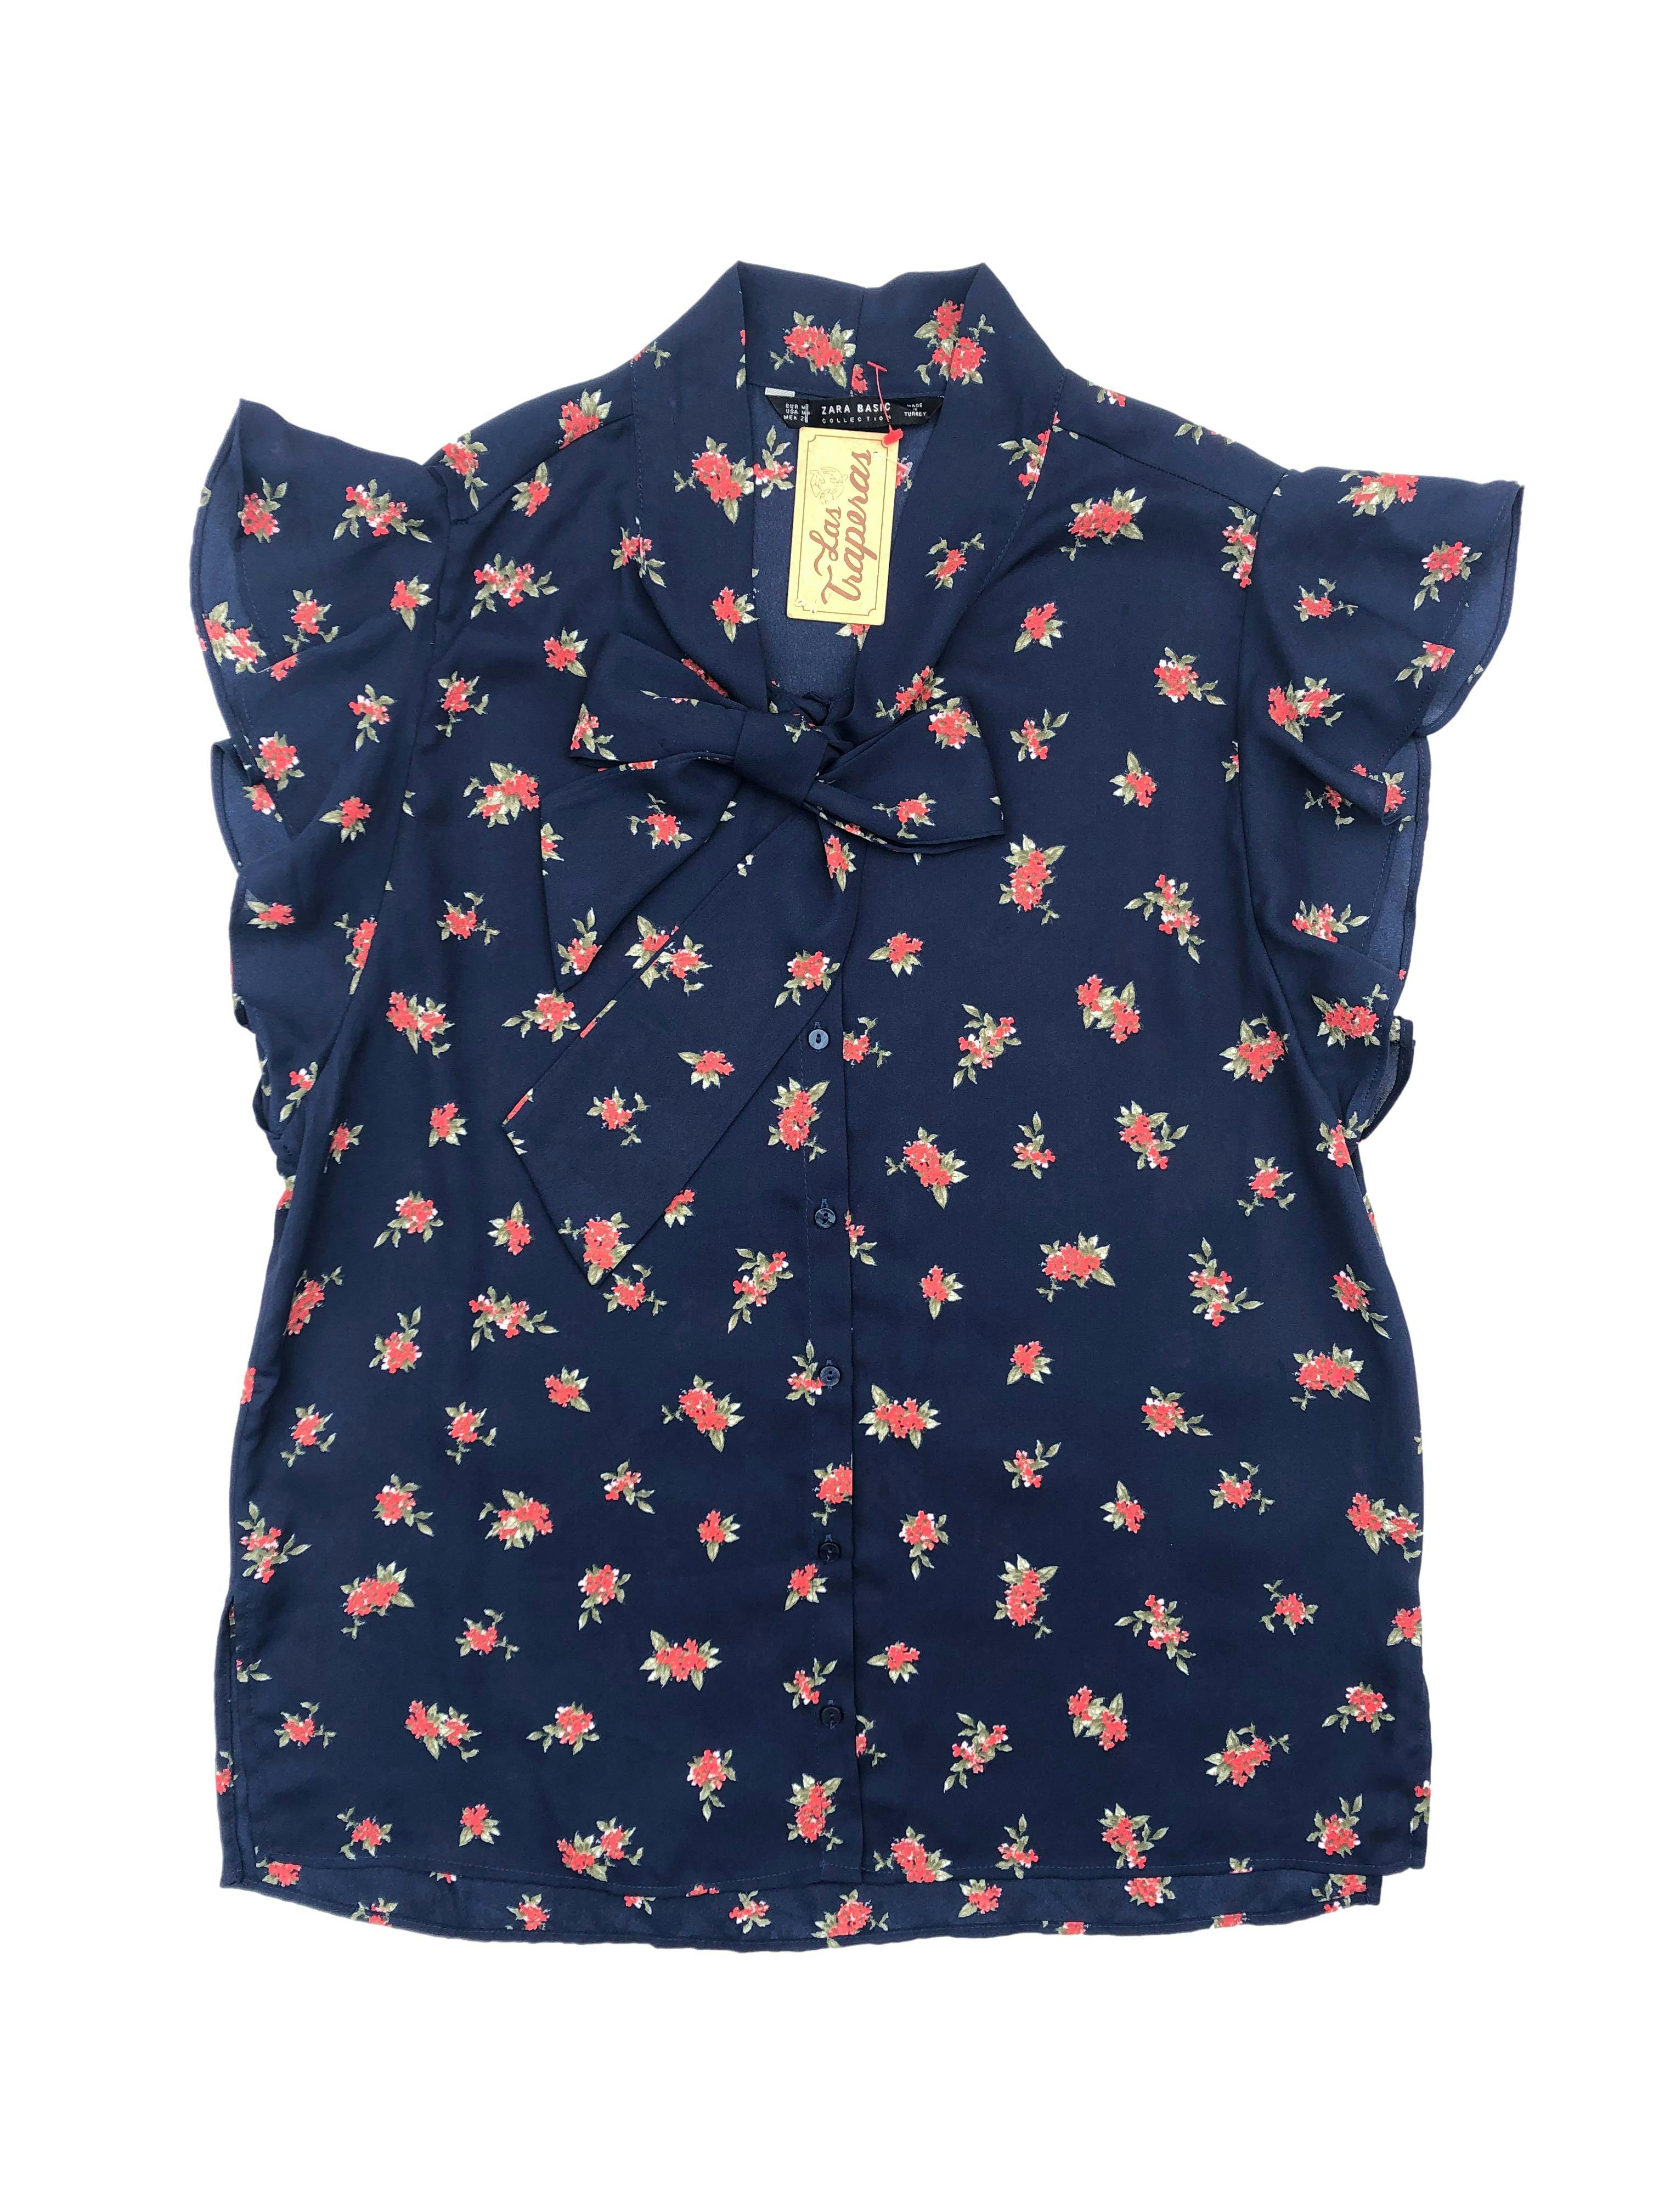 Blusa Zara de gasa azul con flores rojas, mangas volantes y cinto en el cuello. Busto:  100cm, Largo: 60cm. Nuevo. 